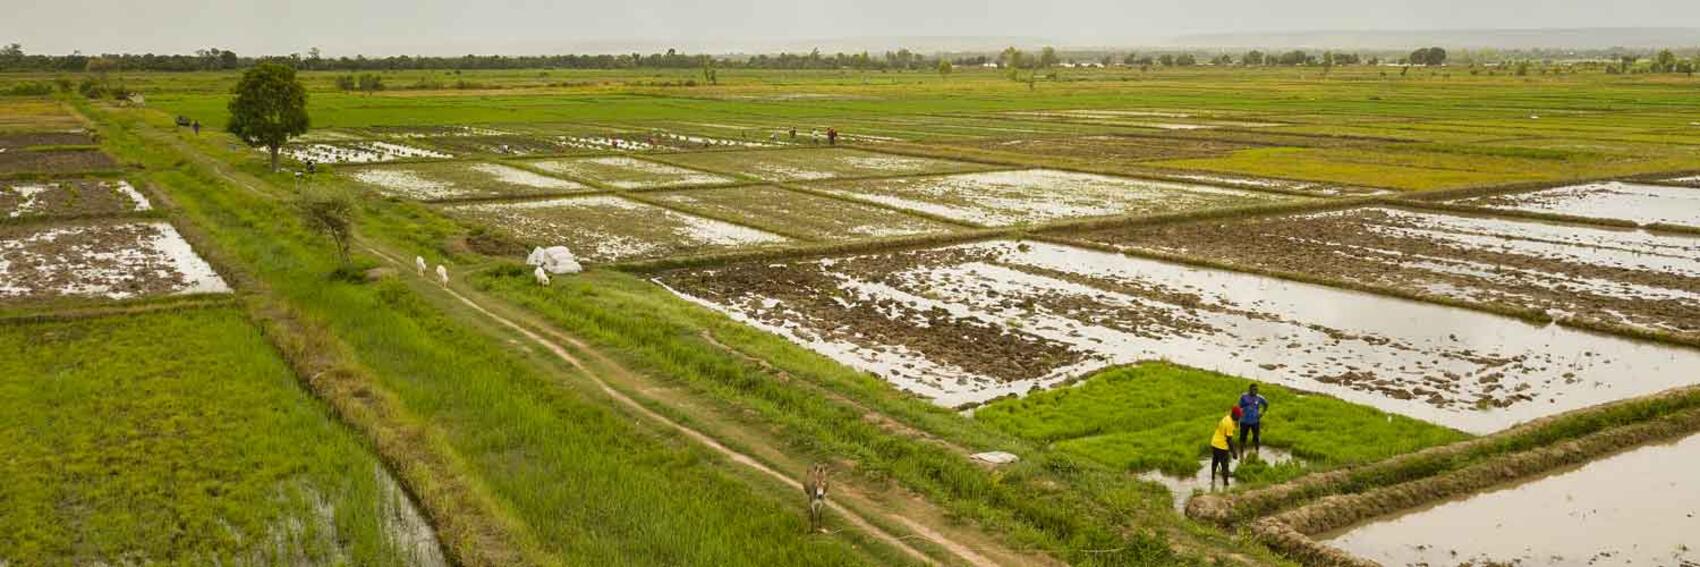 – Macky Sall invite les chefs d’Etat africains à préserver les terres arables du continent et à les valoriser pour nourrir l’Afrique.